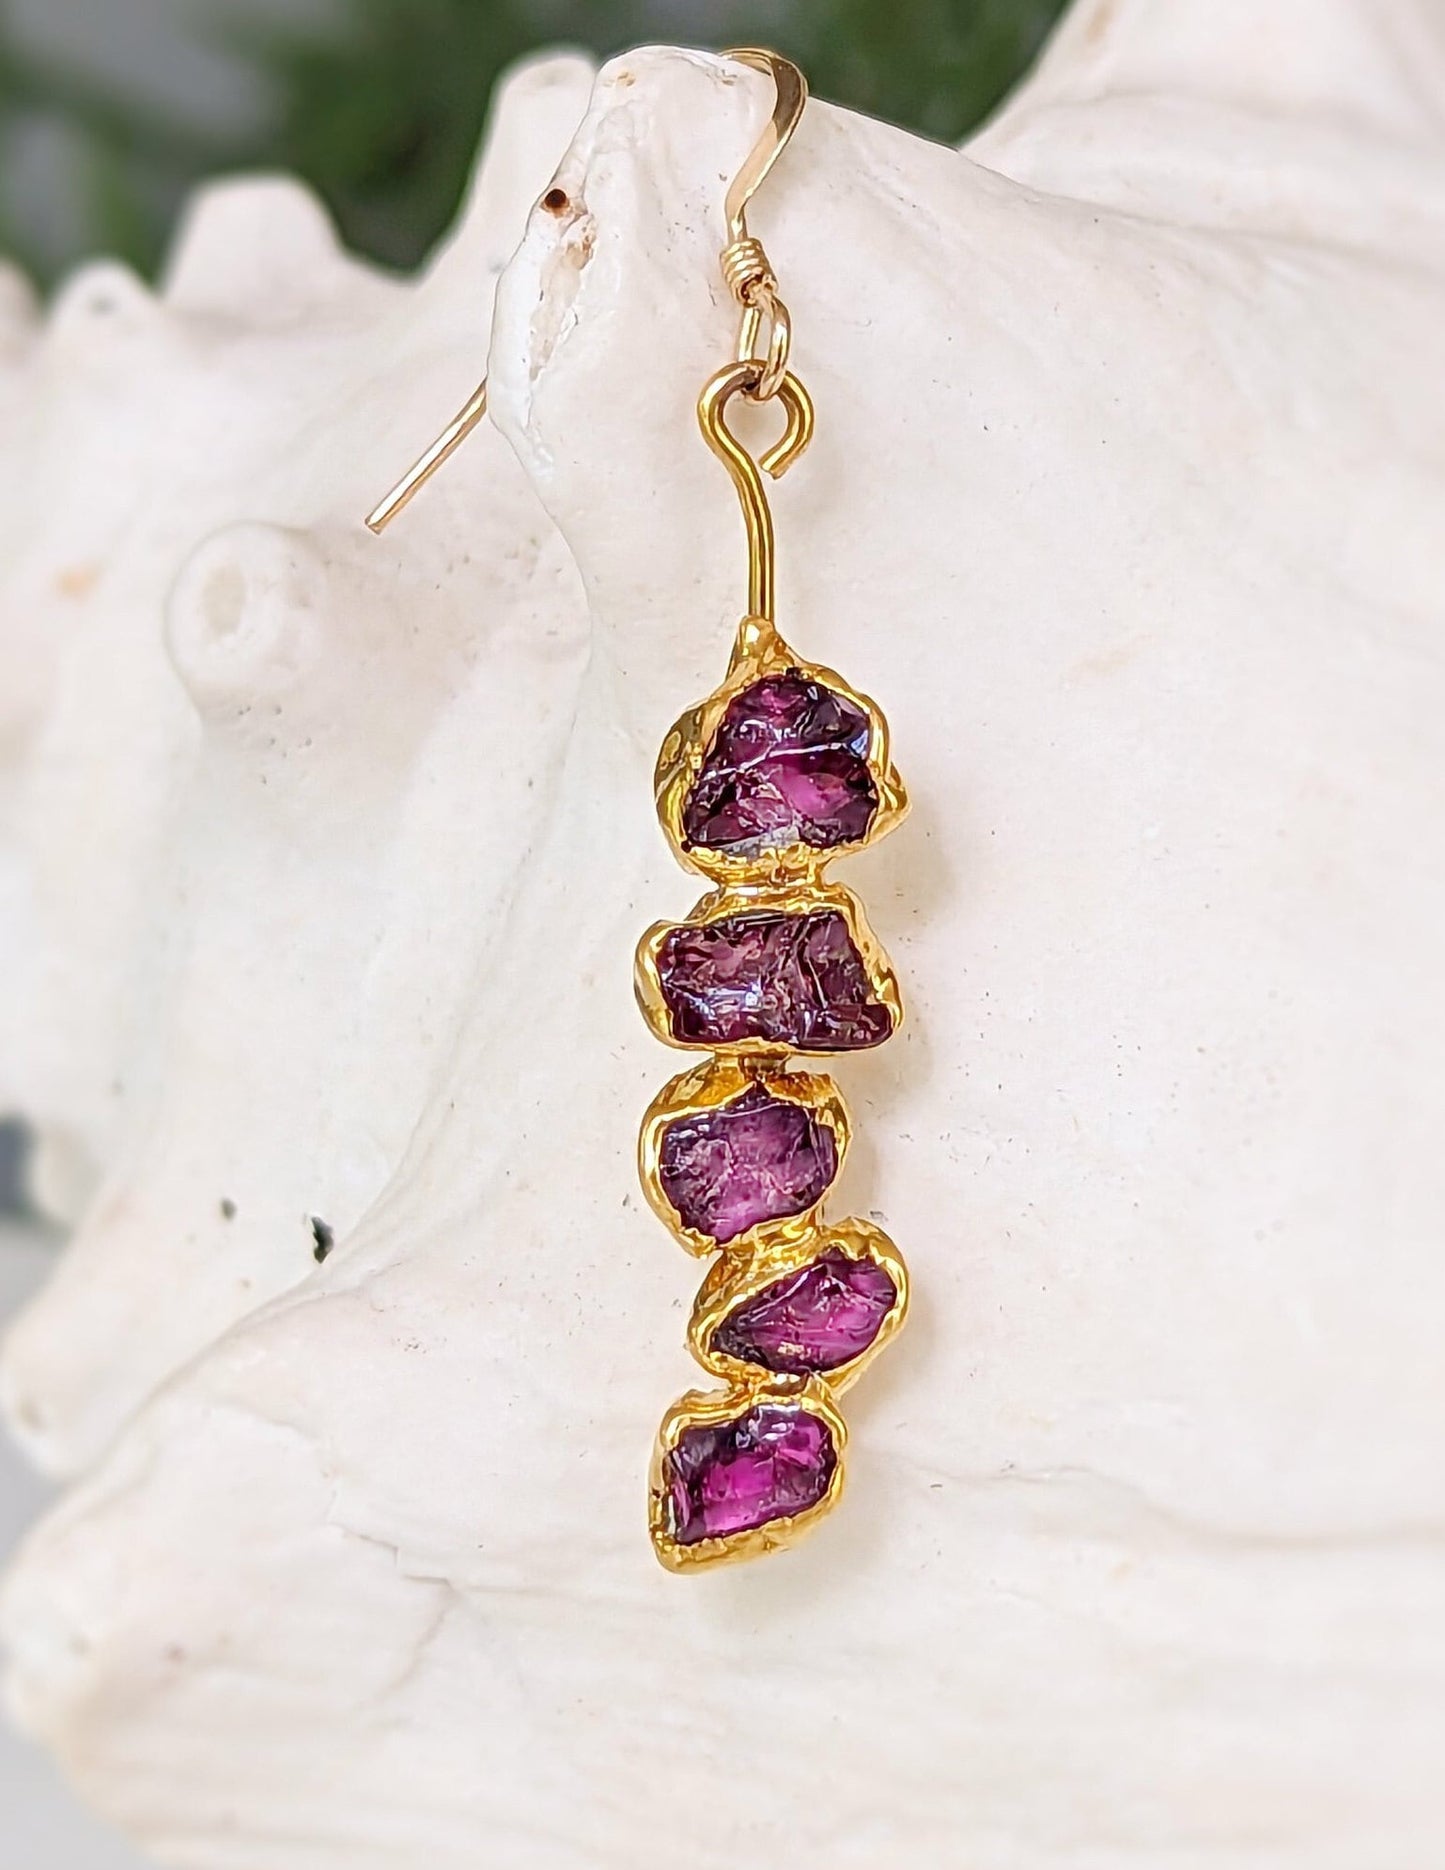 Rhodolite Garnet dangle earrings in unique 18k Gold setting